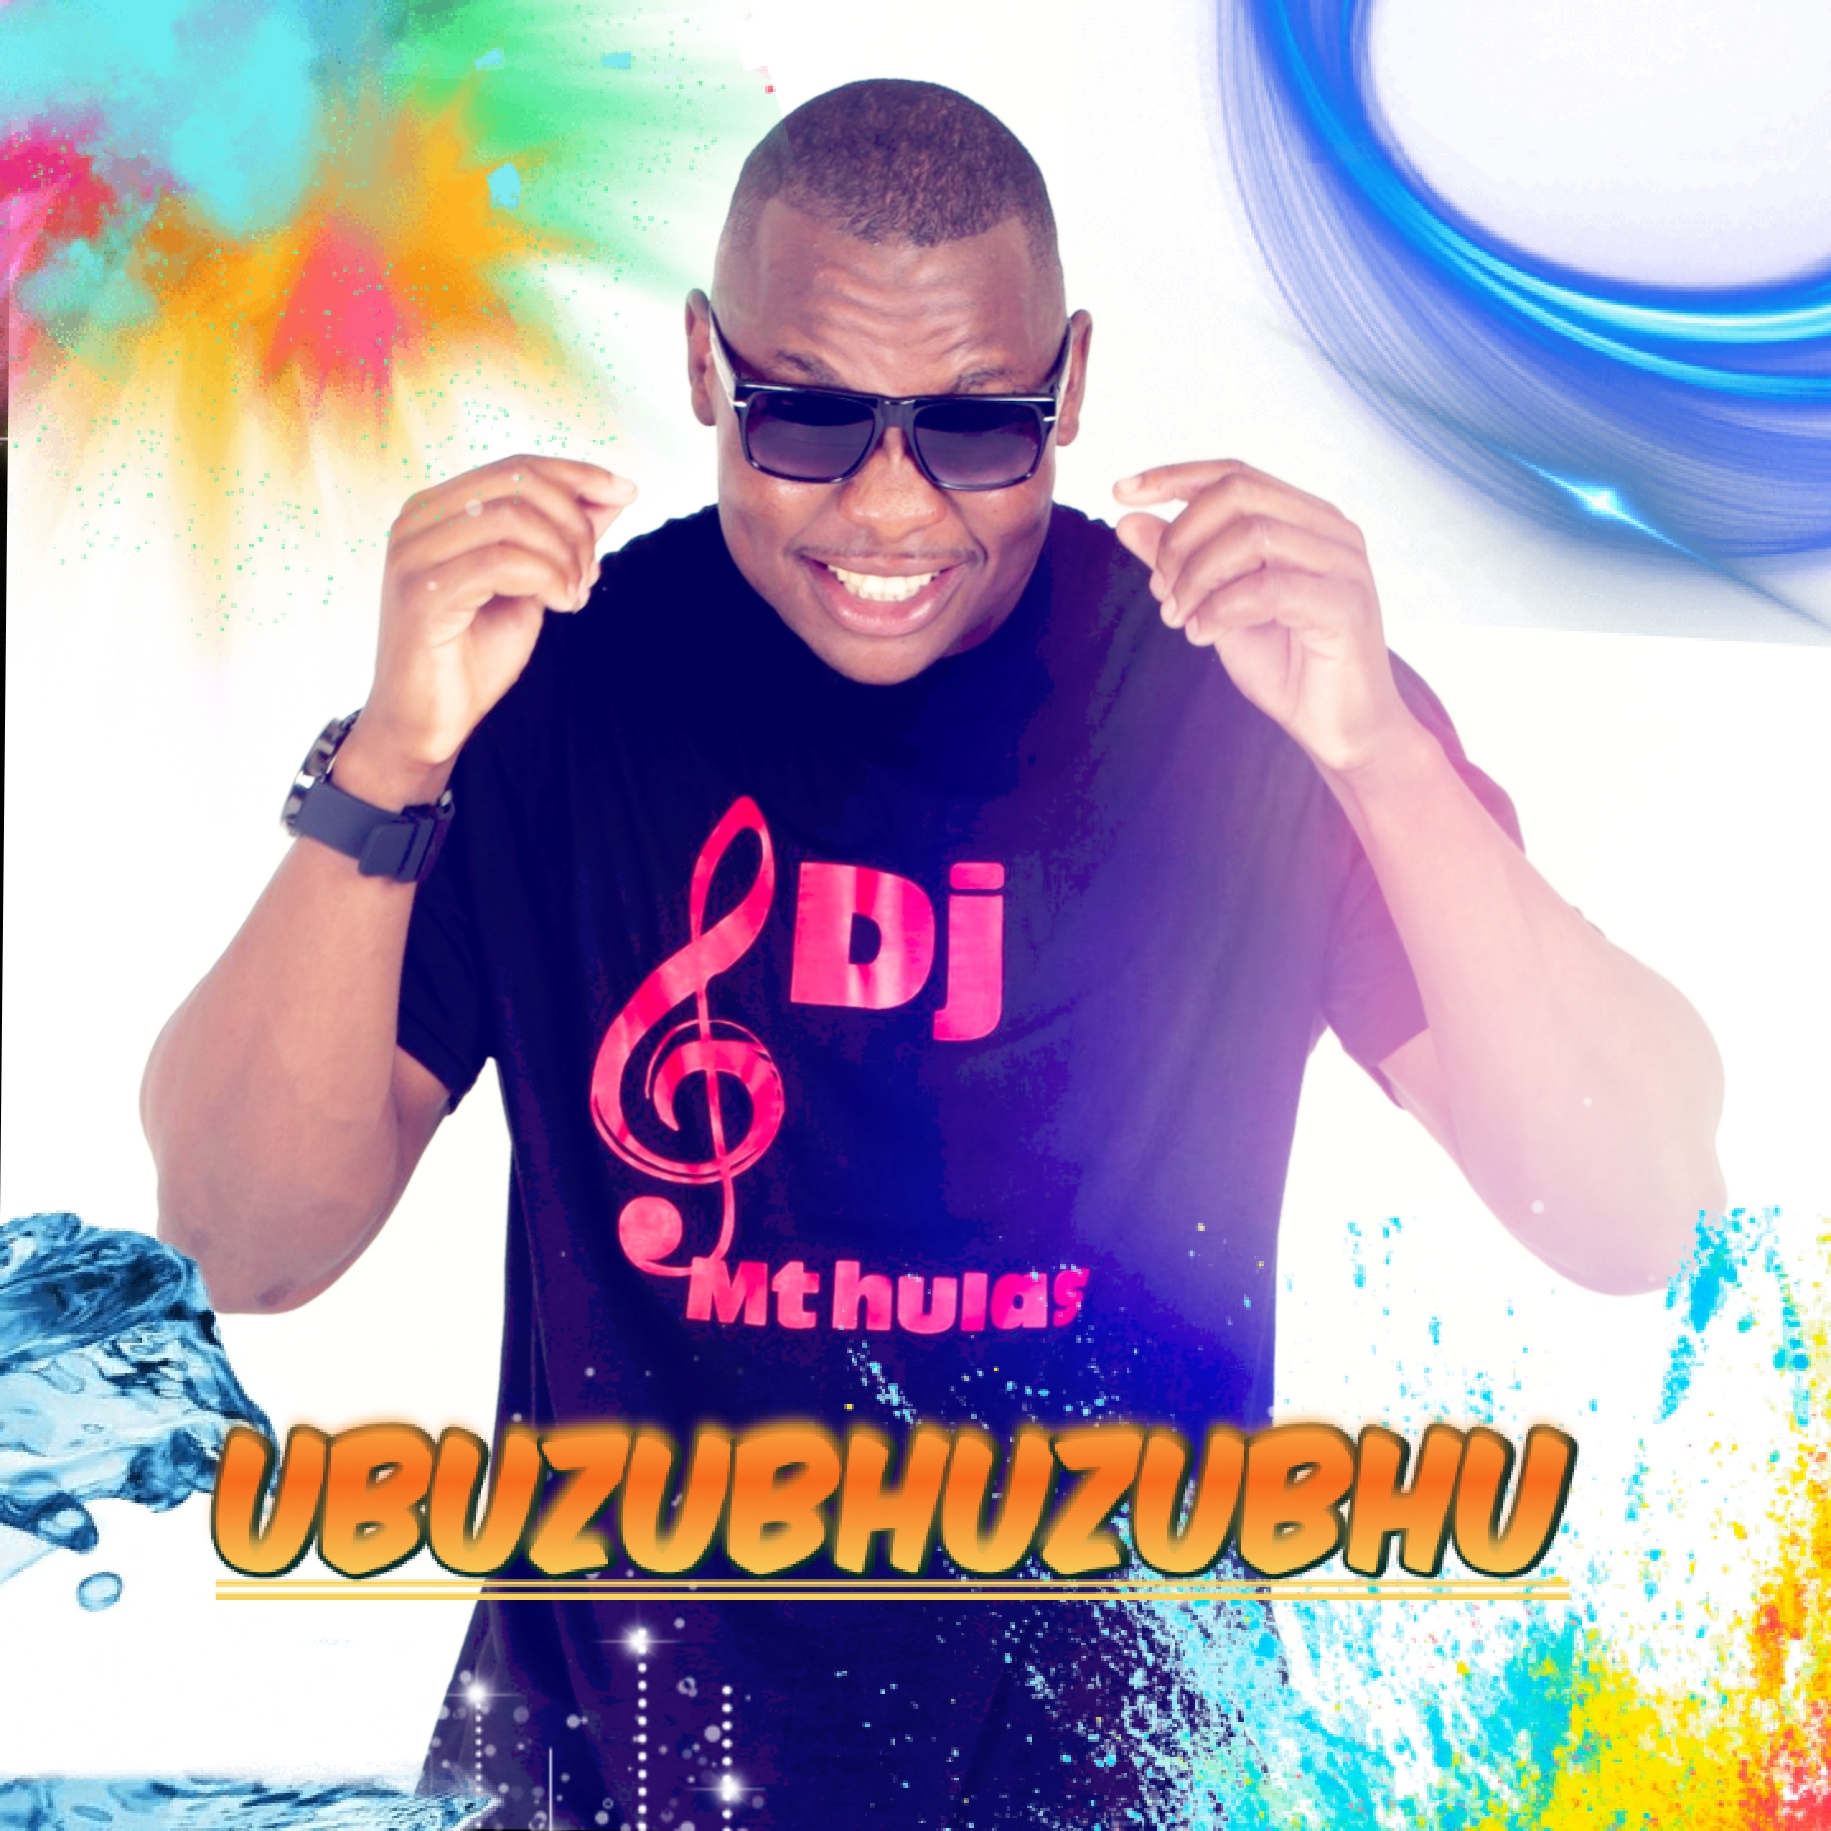 UBUZUBHUZUBHU - DJ Mthulas